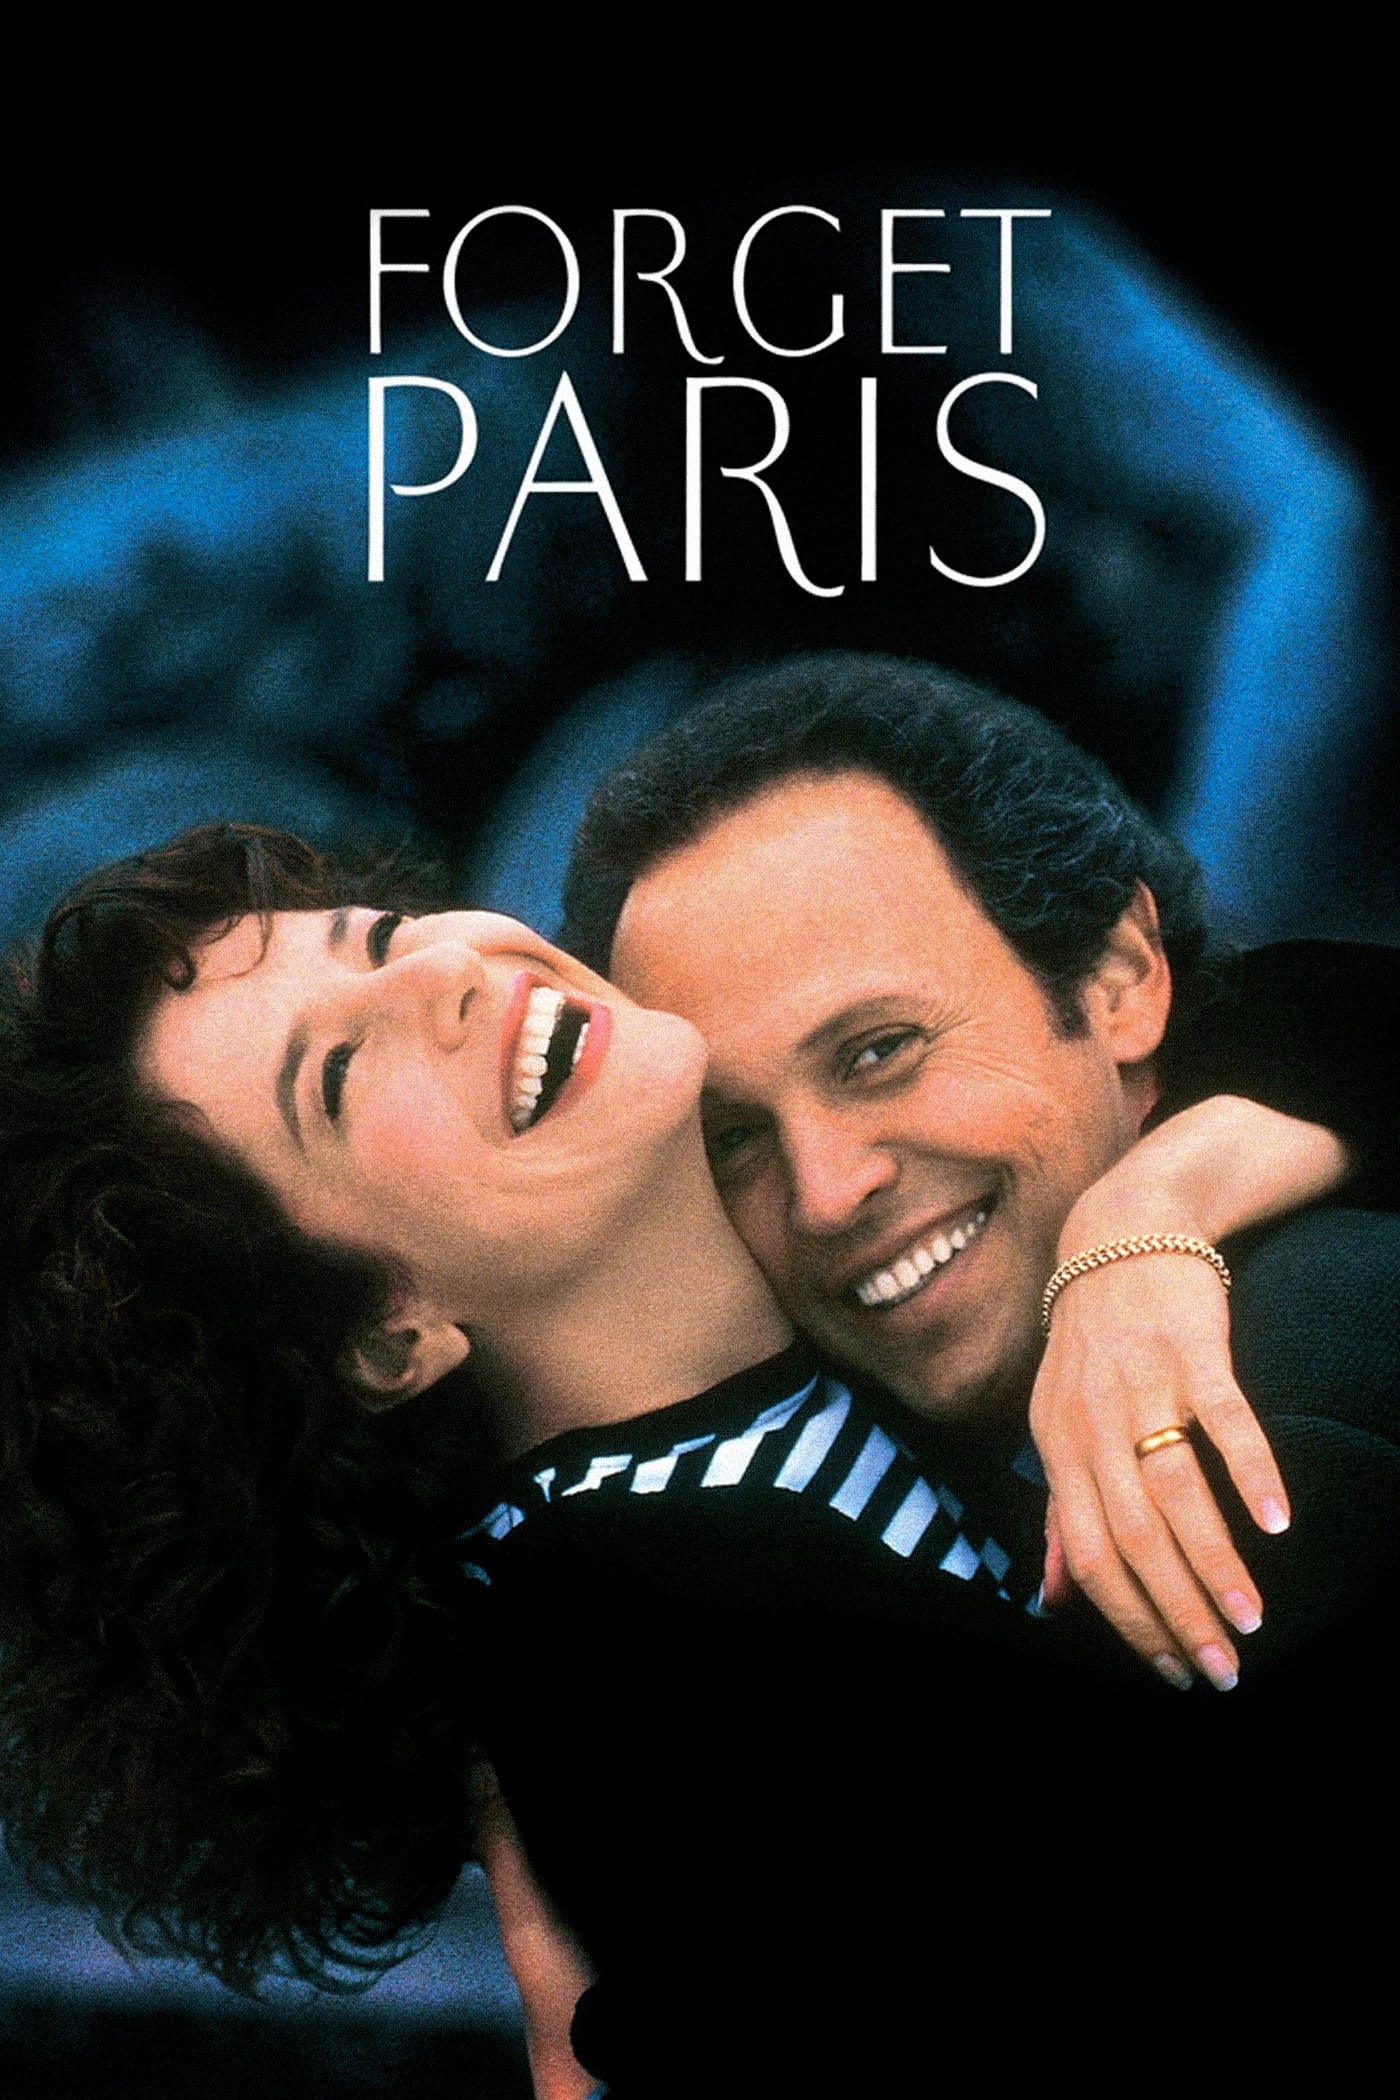 ดูหนังออนไลน์ Forget Paris 1995 ฟอร์เก็ต ปารีส บอกหัวใจให้คิดถึง